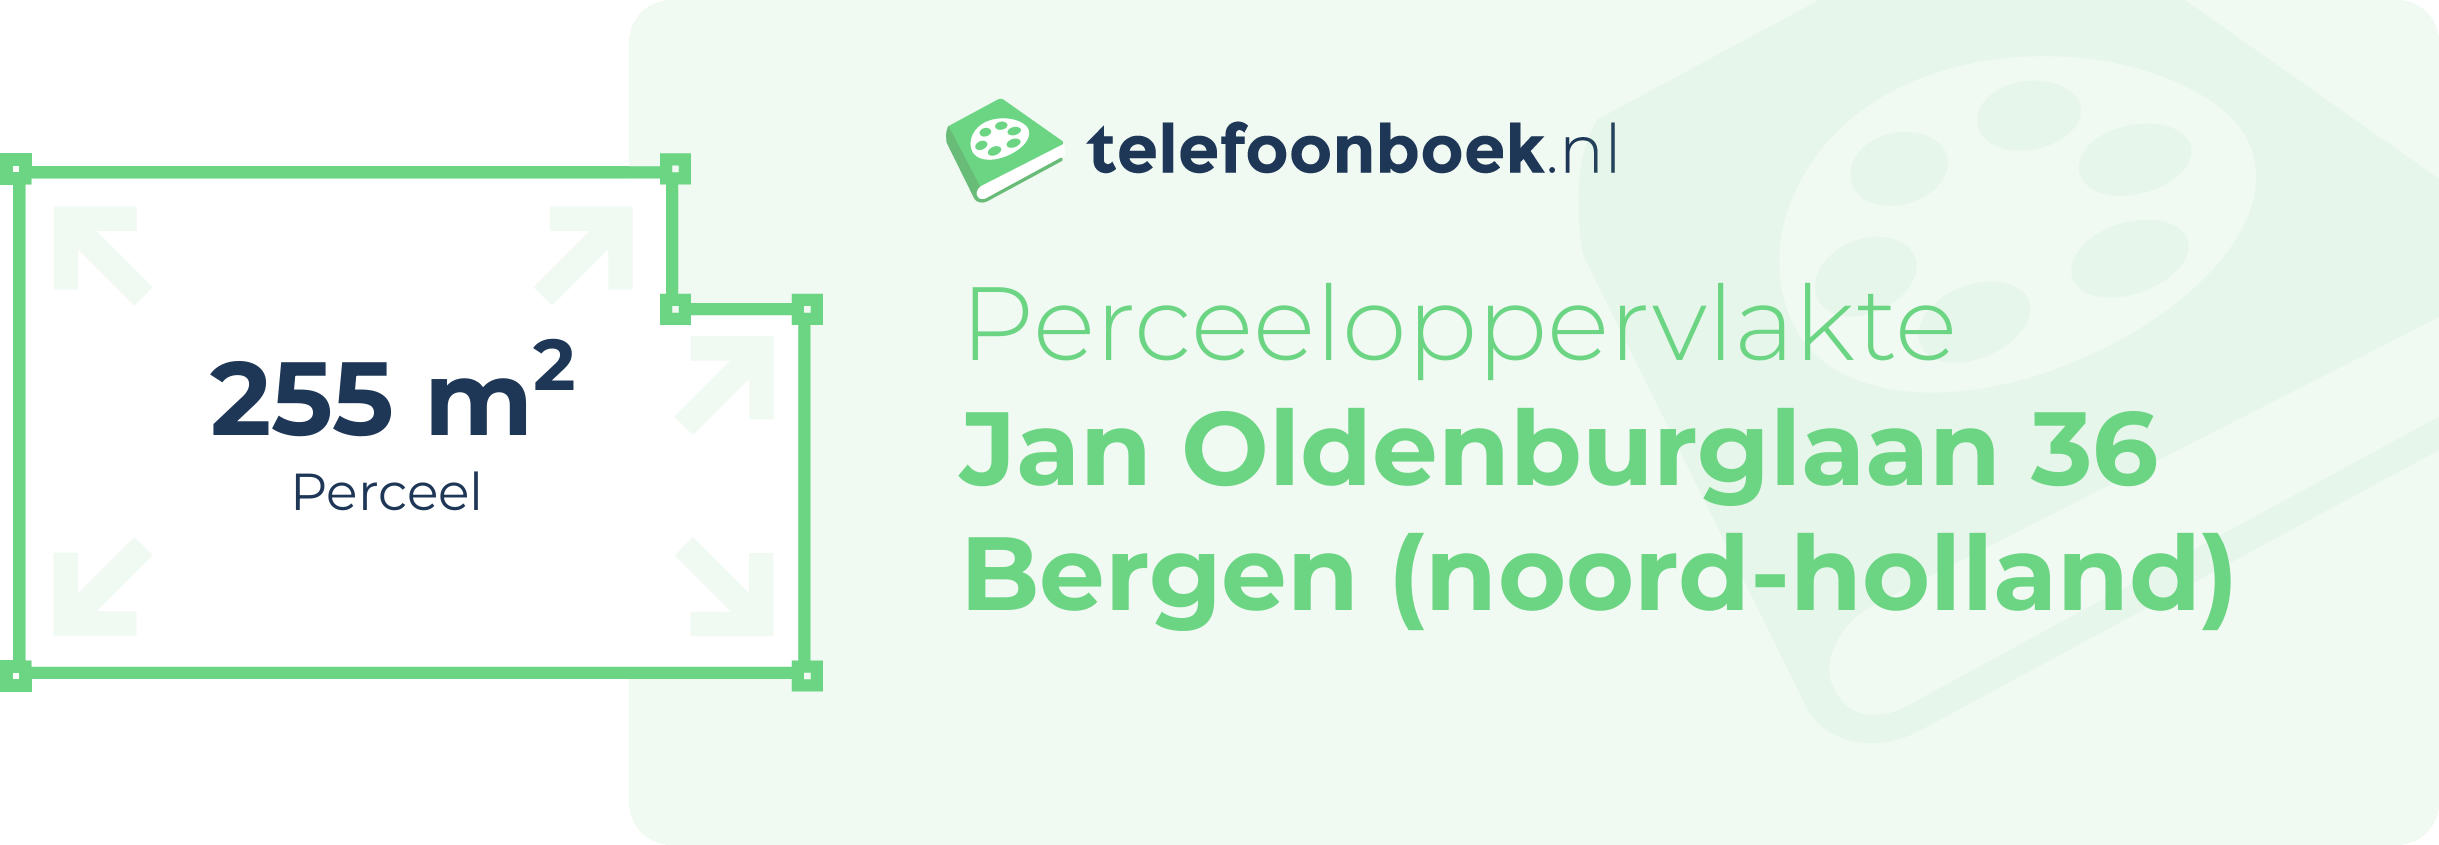 Perceeloppervlakte Jan Oldenburglaan 36 Bergen (Noord-Holland)